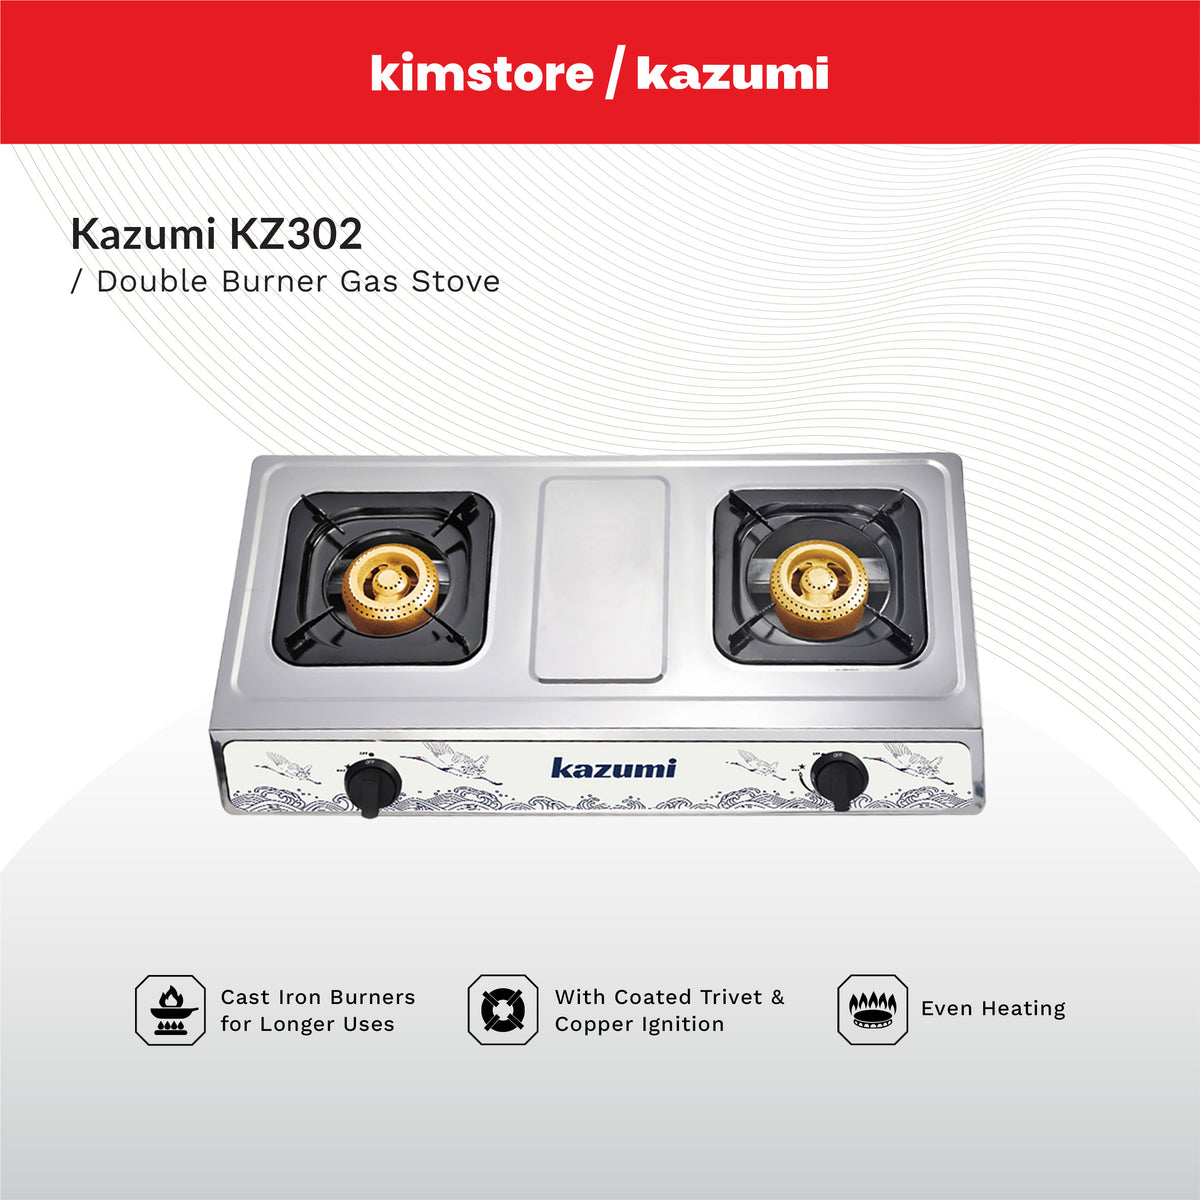 KAZUMI KZ302 Double Burner Gas Stove